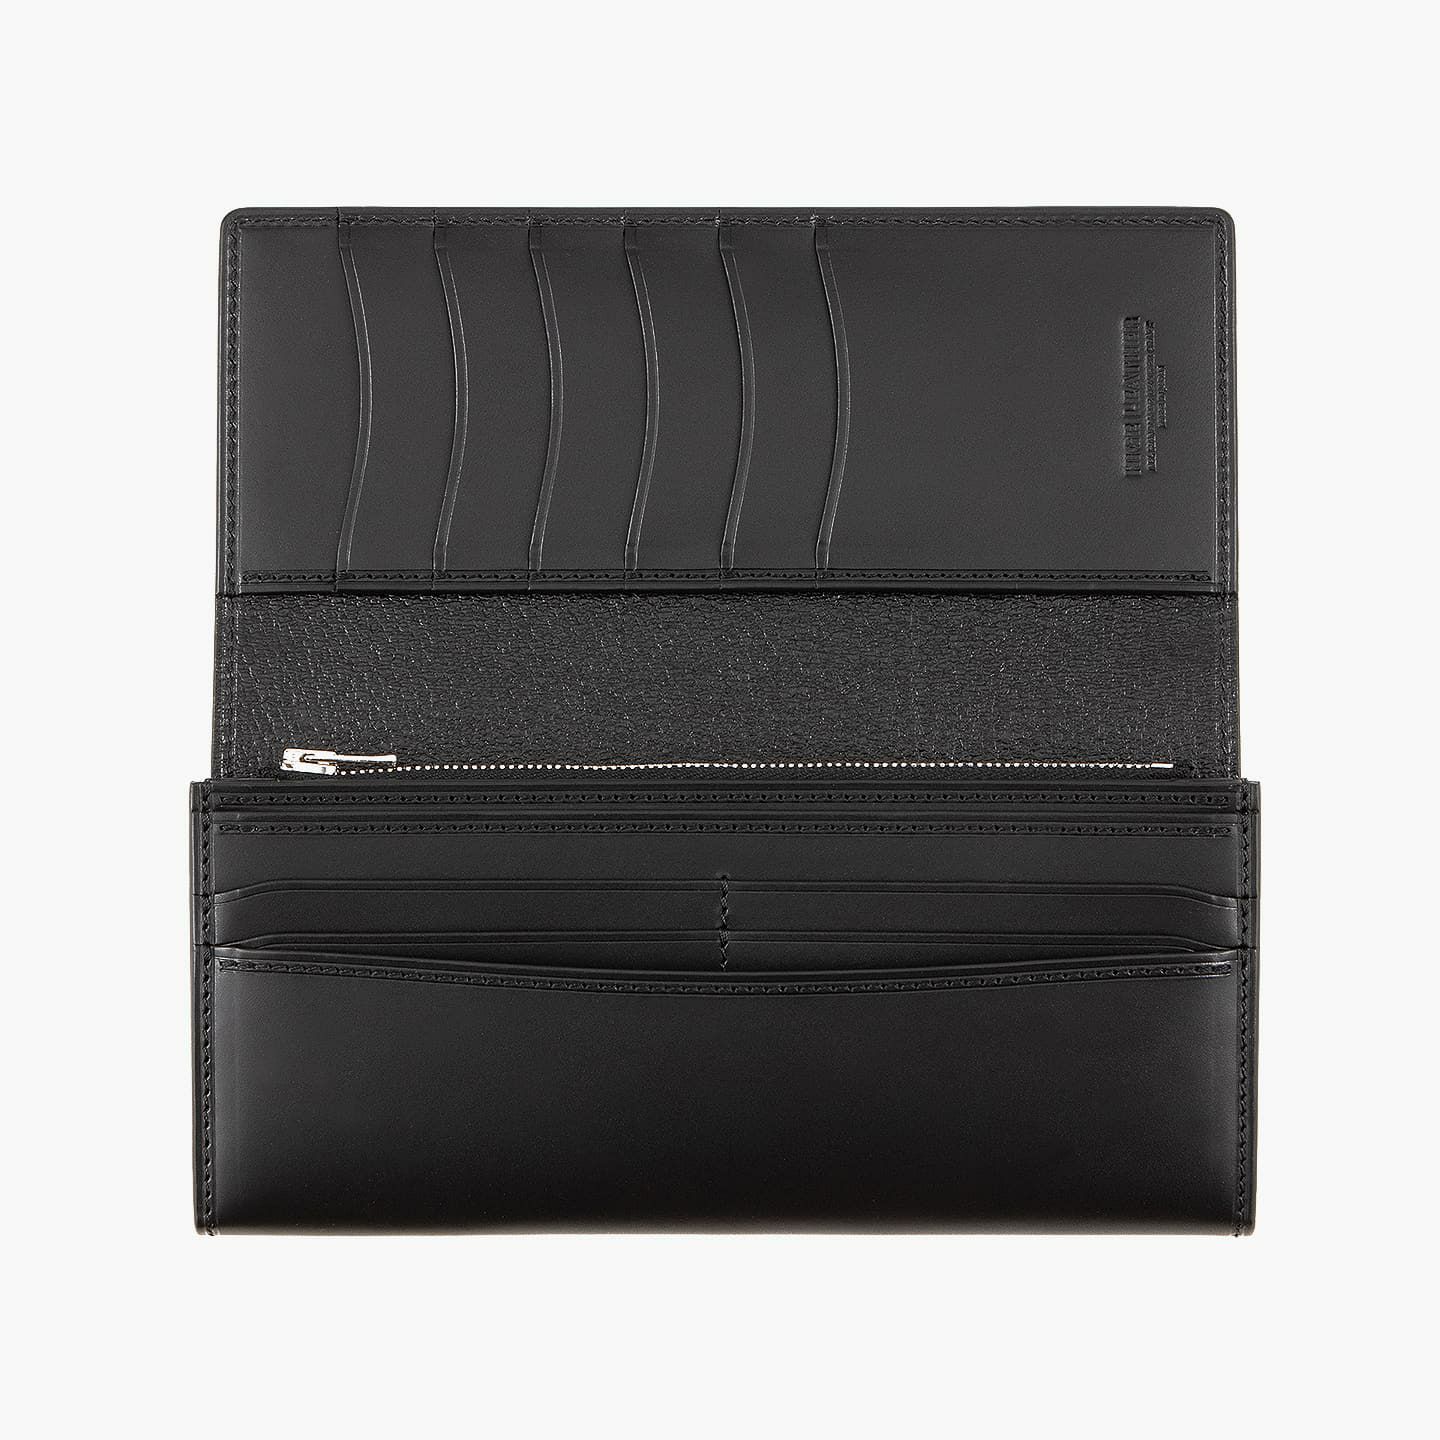 縦方向のカードポケットを6つ備え、使用時に財布を持つ向きを変えることなく、カードの出し入れが可能。カードポケットの背面にも、フリーポケットを装備しています。